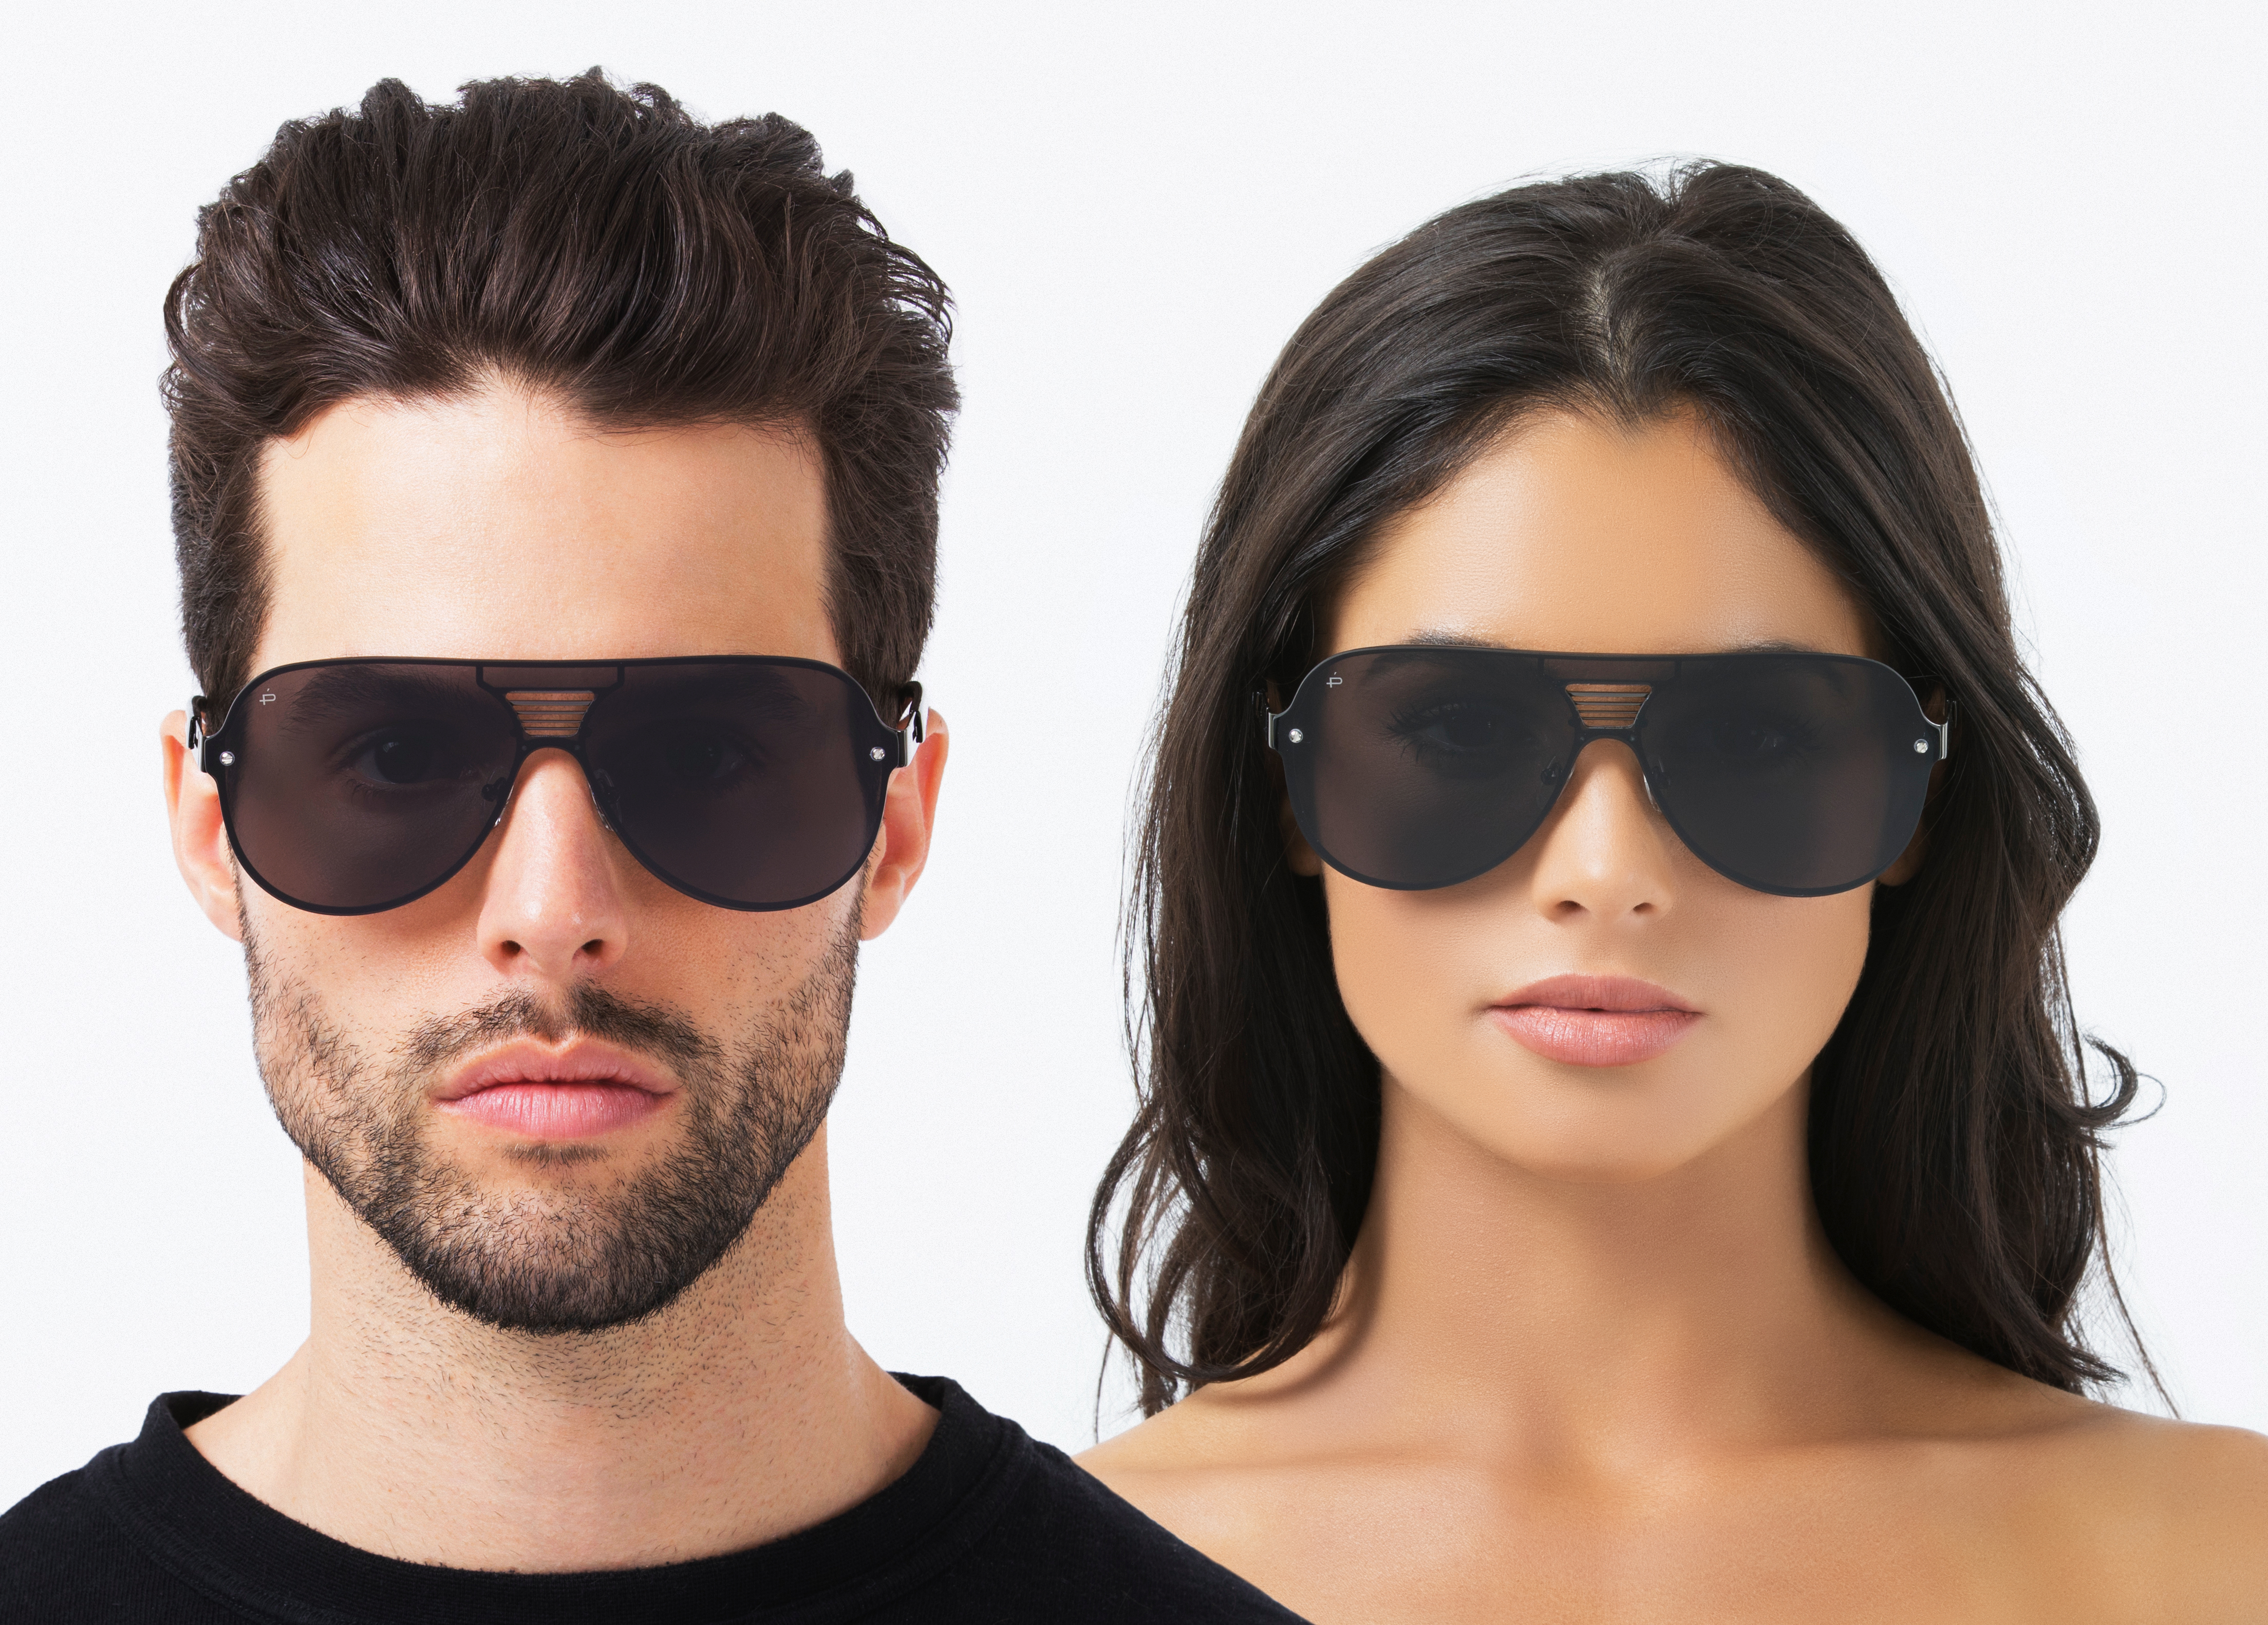 Вайлдберриз очки мужские солнцезащитные. Prive Revaux очки. Очки солнцезащитные «Aviator». Солнцезащитные очки (унисекс). Солнцезащитные очки мужские и женские.